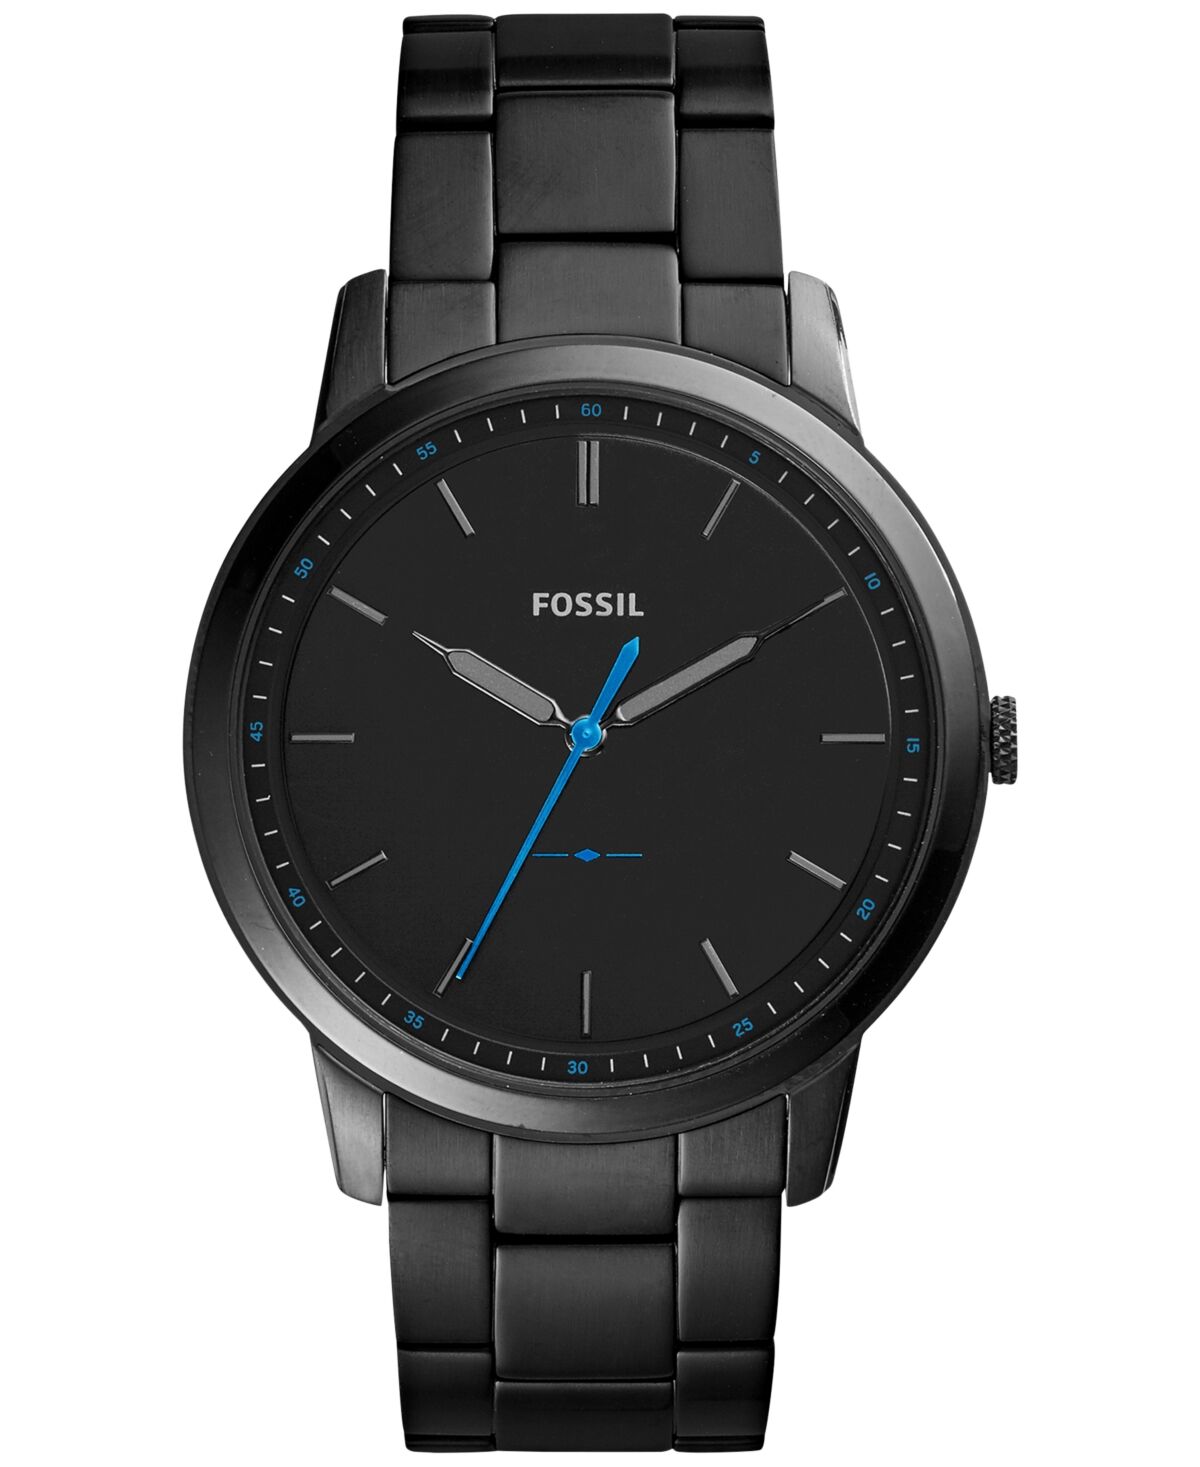 Fossil Men's The Minimalist Black Stainless Steel Bracelet Watch 44mm FS5308 - Black